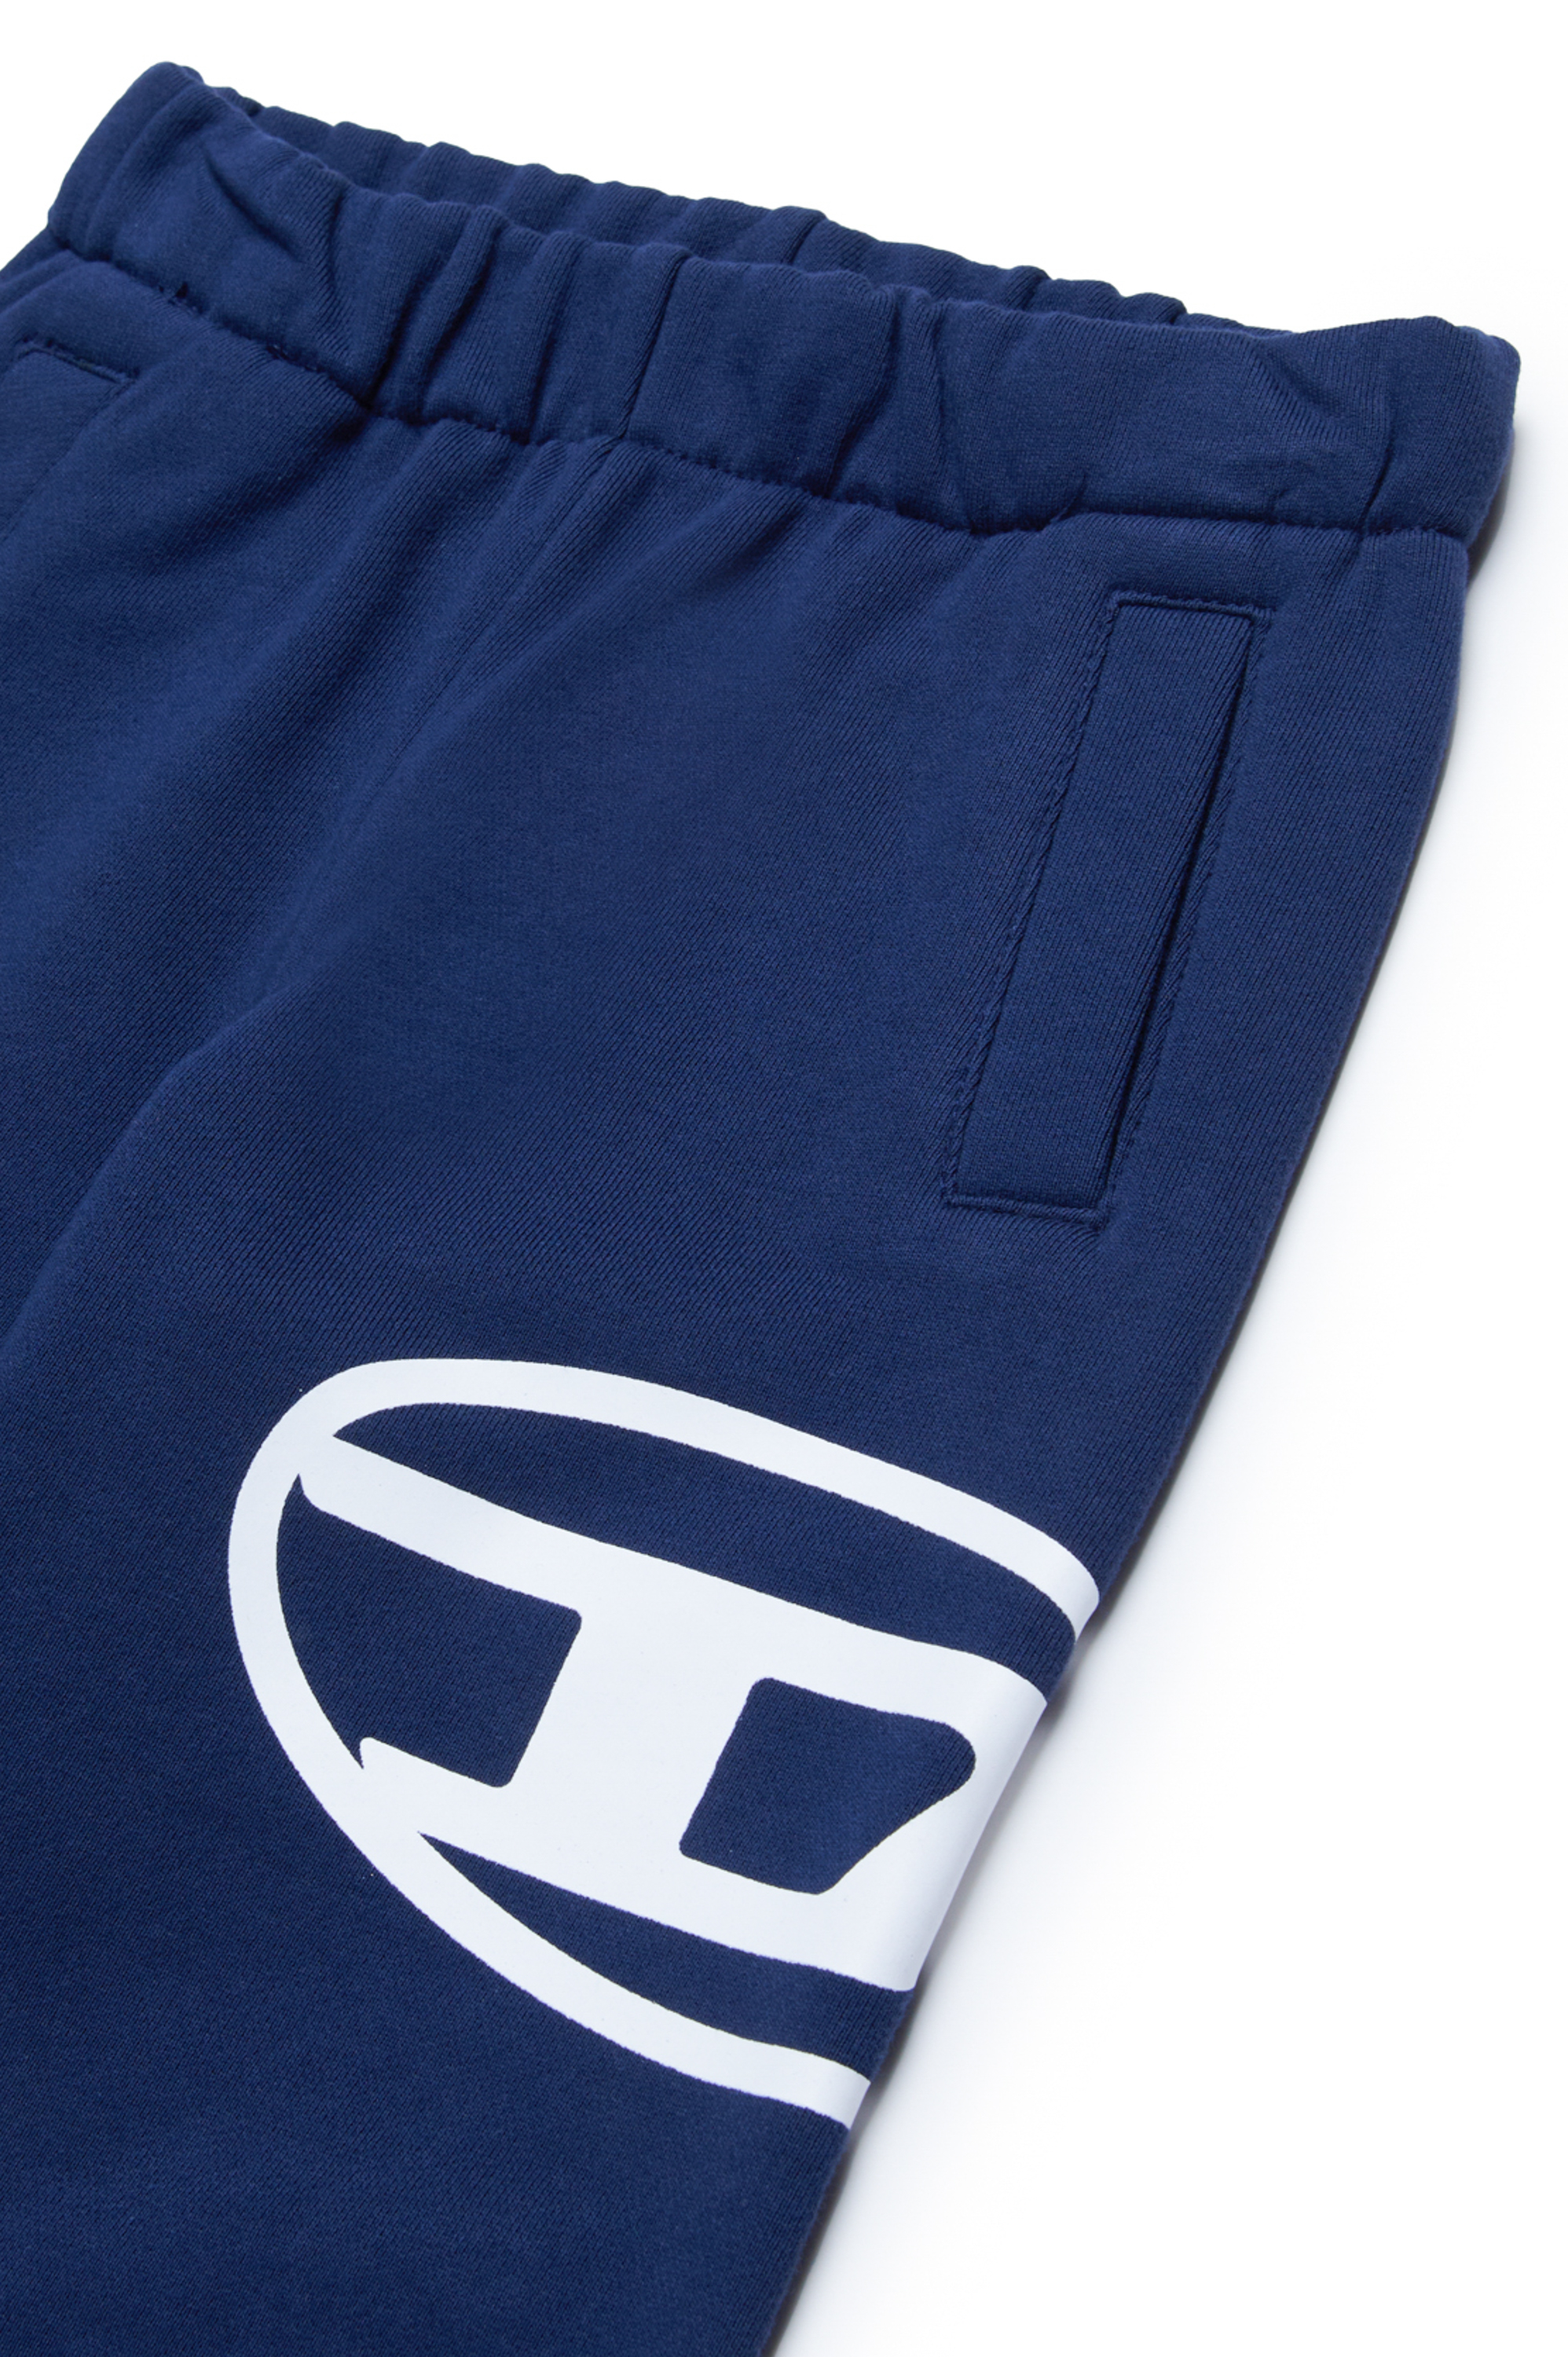 Diesel - PCERB, Unisex Pantalones deportivos con estampado Oval D in Azul marino - Image 3